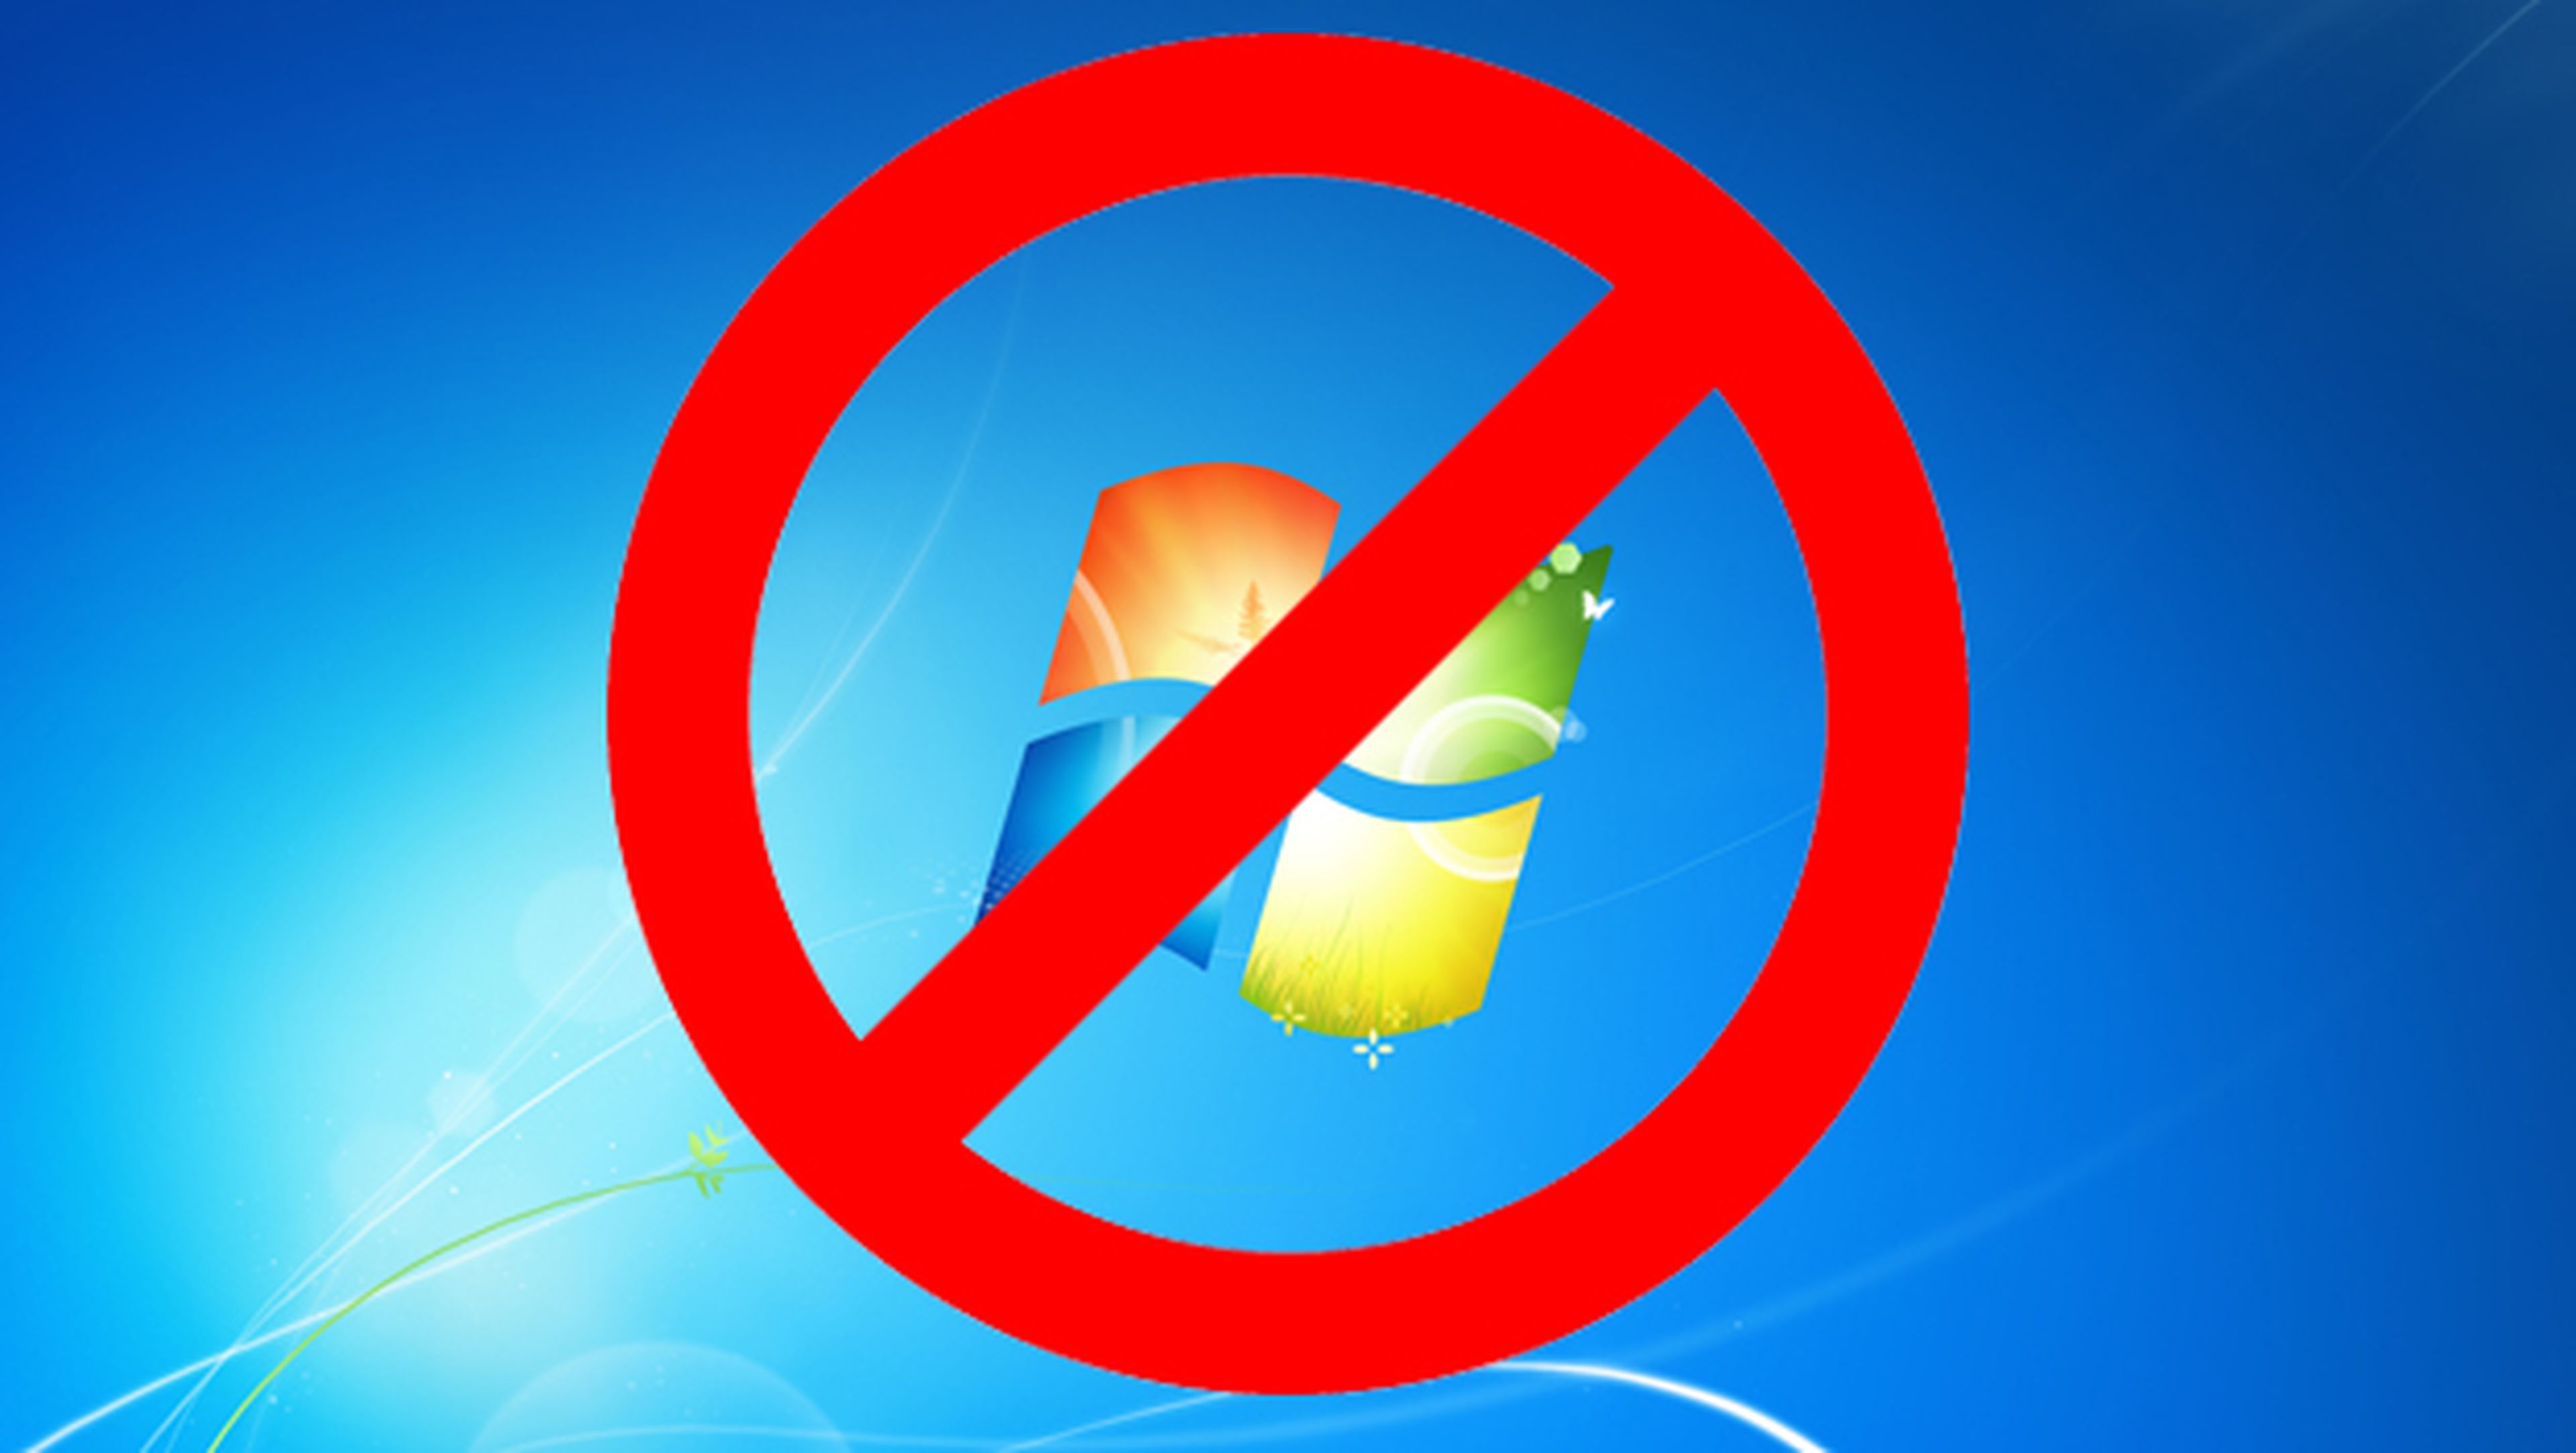 Actualizaciones de Windows 7 a Windows 10, bloqueadas en algunos procesadores